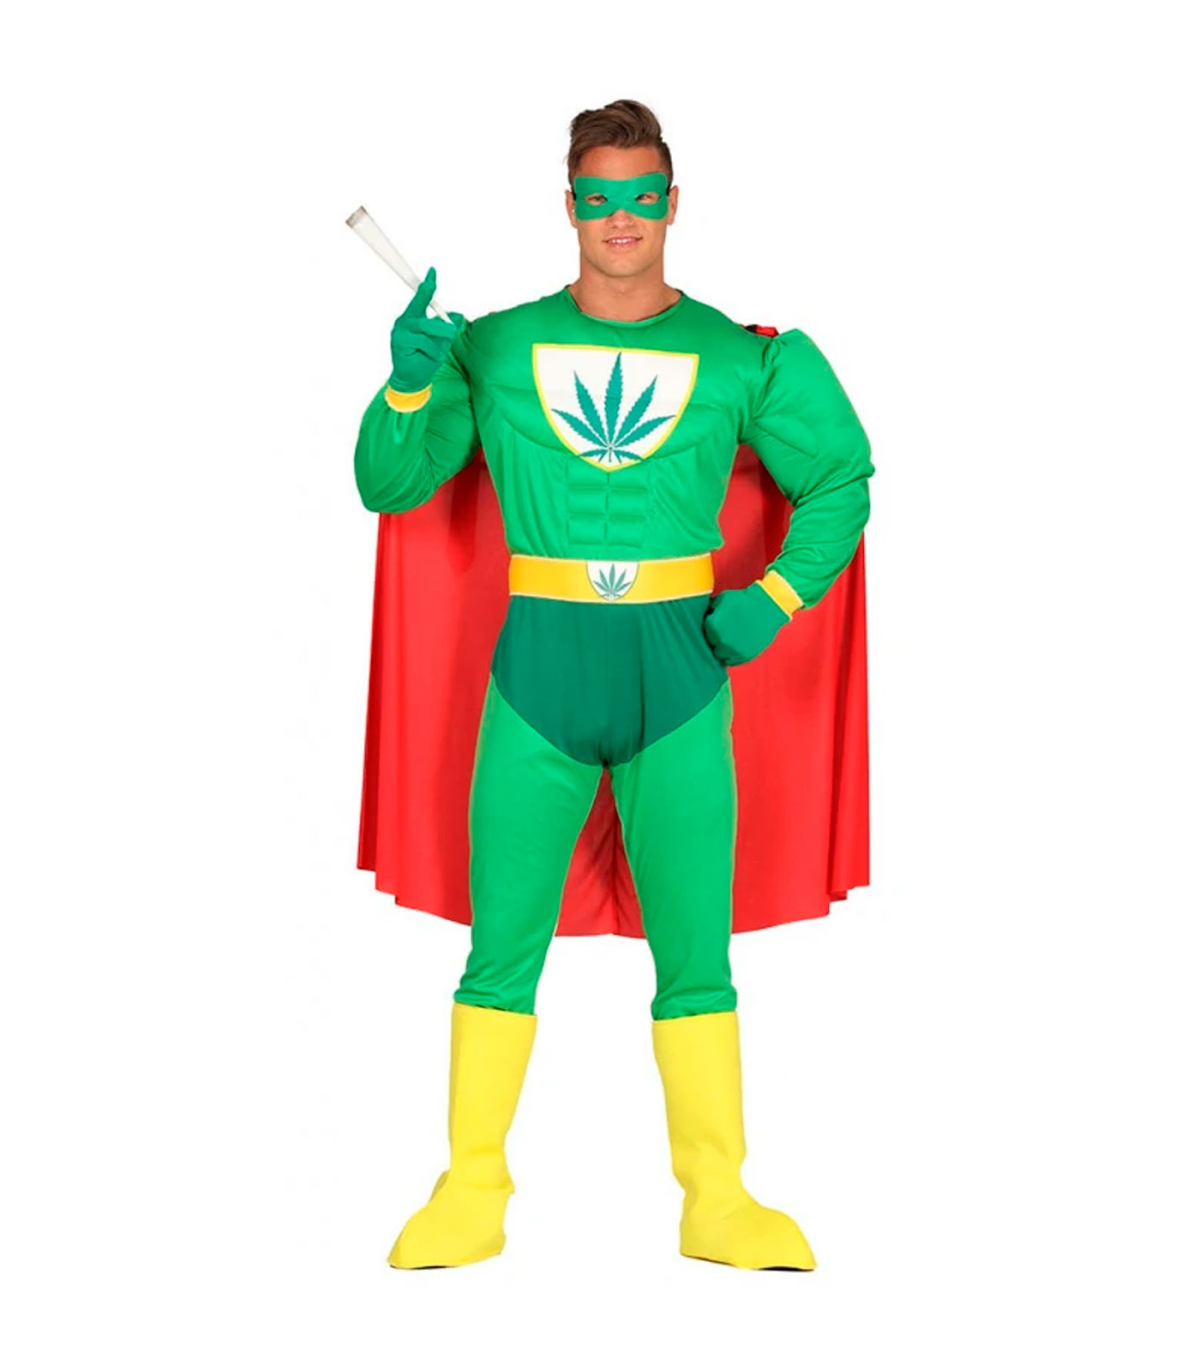 Tradineur - Disfraz de superhéroe marihuana para adulto, poliéster, incluye  antifaz, capa, mono, guantes y cinturón, atuendo de